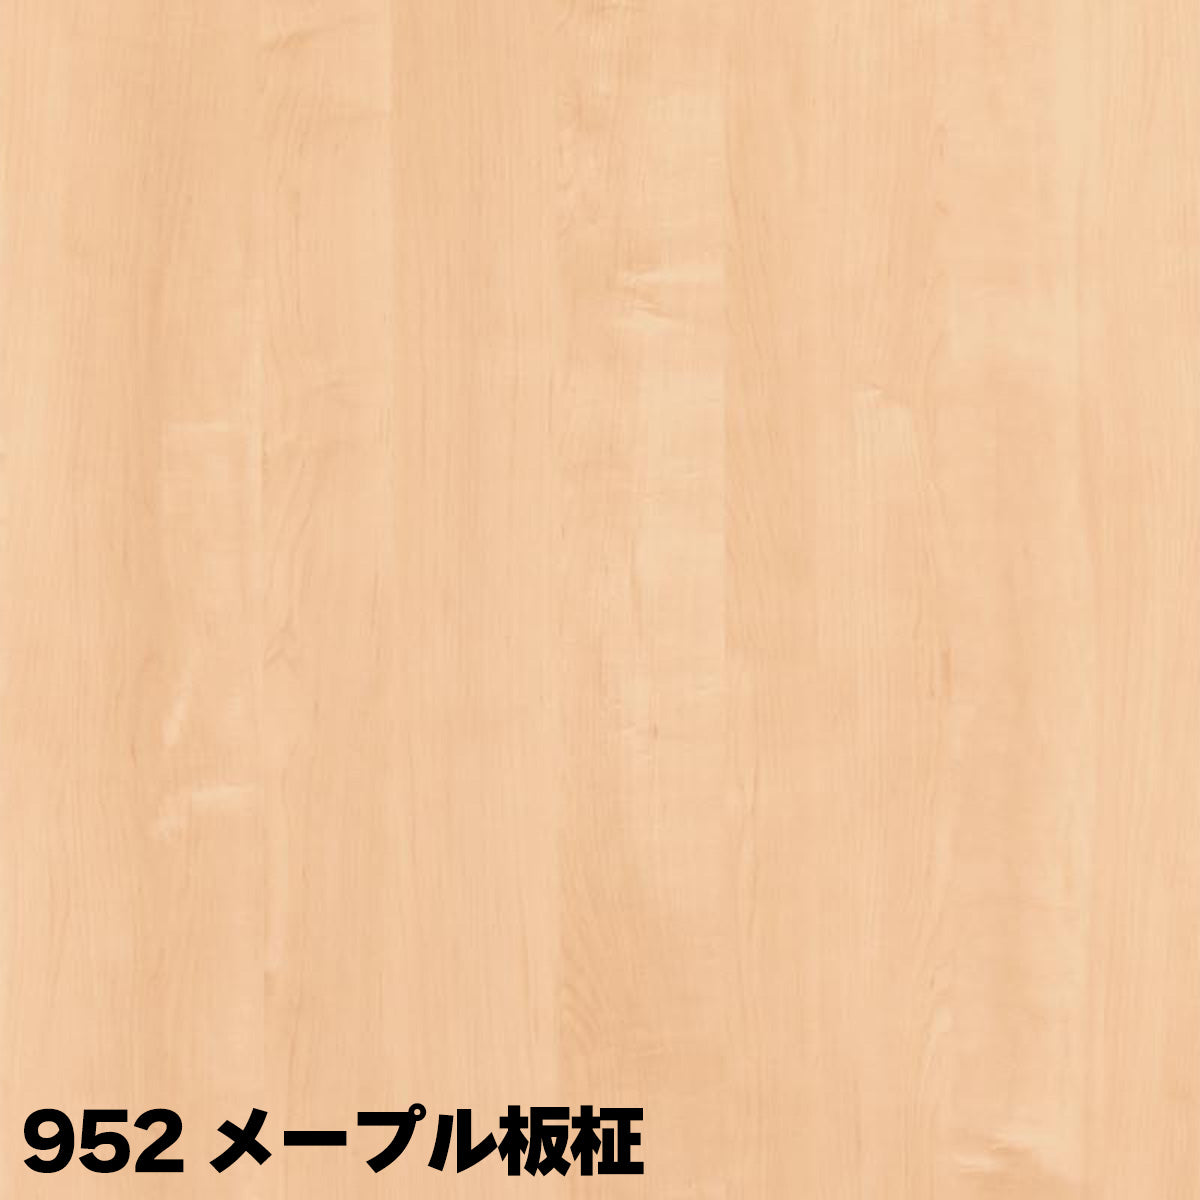 厚さ18mm オーダーカット 木口テープ選択可能 ランバーポリ 木目調6色